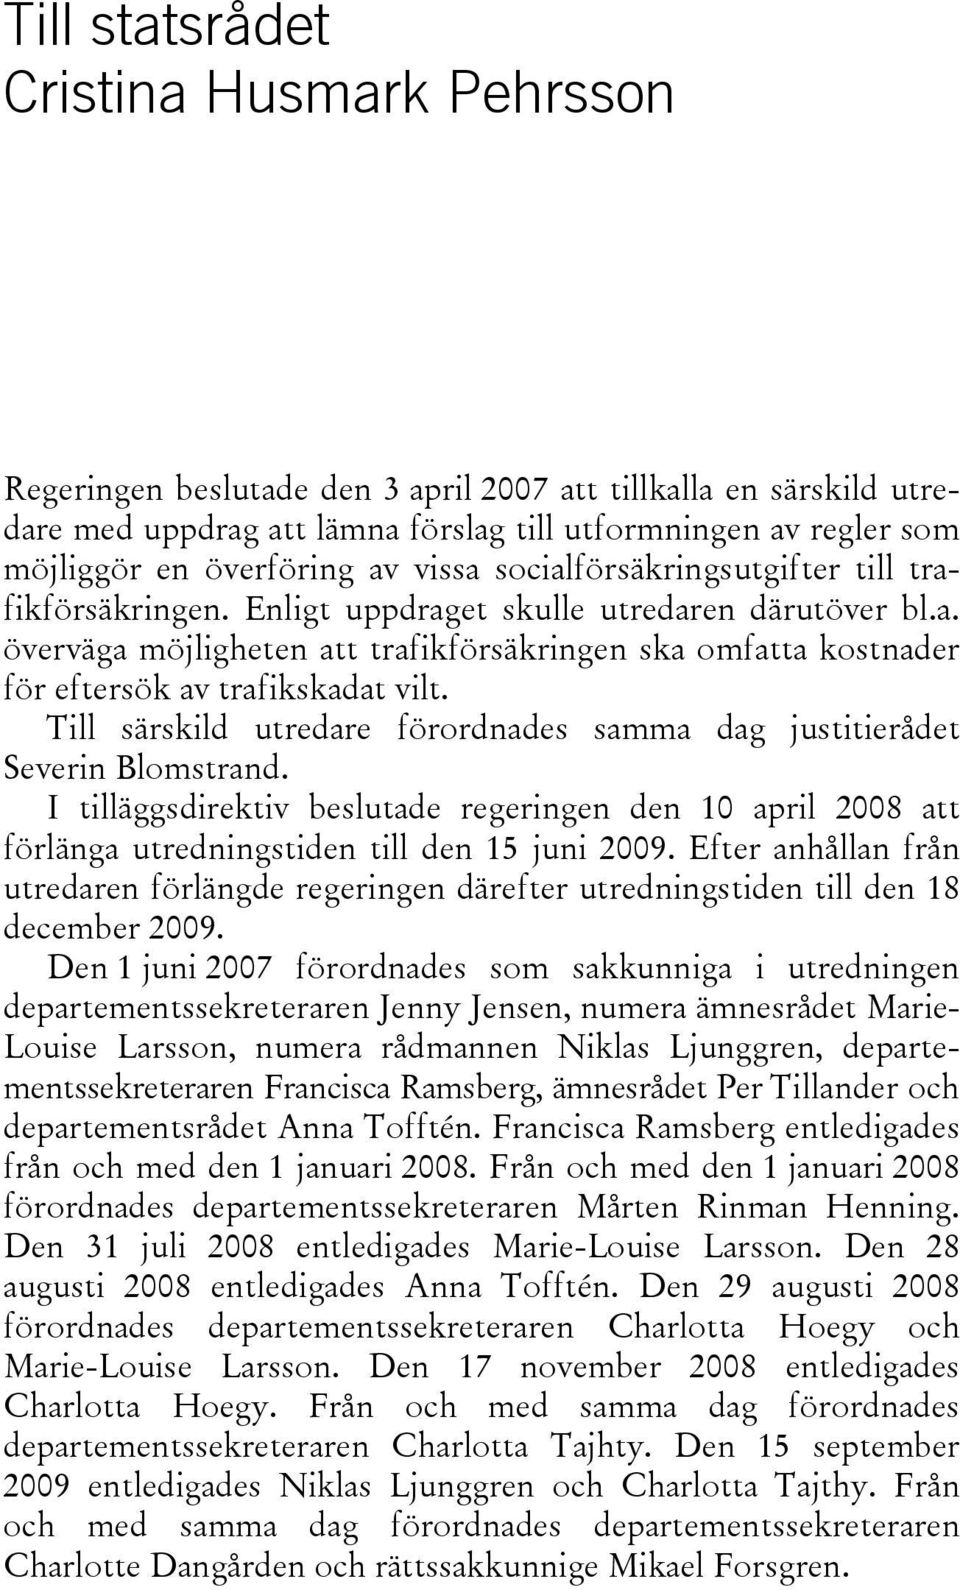 Till särskild utredare förordnades samma dag justitierådet Severin Blomstrand. I tilläggsdirektiv beslutade regeringen den 10 april 2008 att förlänga utredningstiden till den 15 juni 2009.